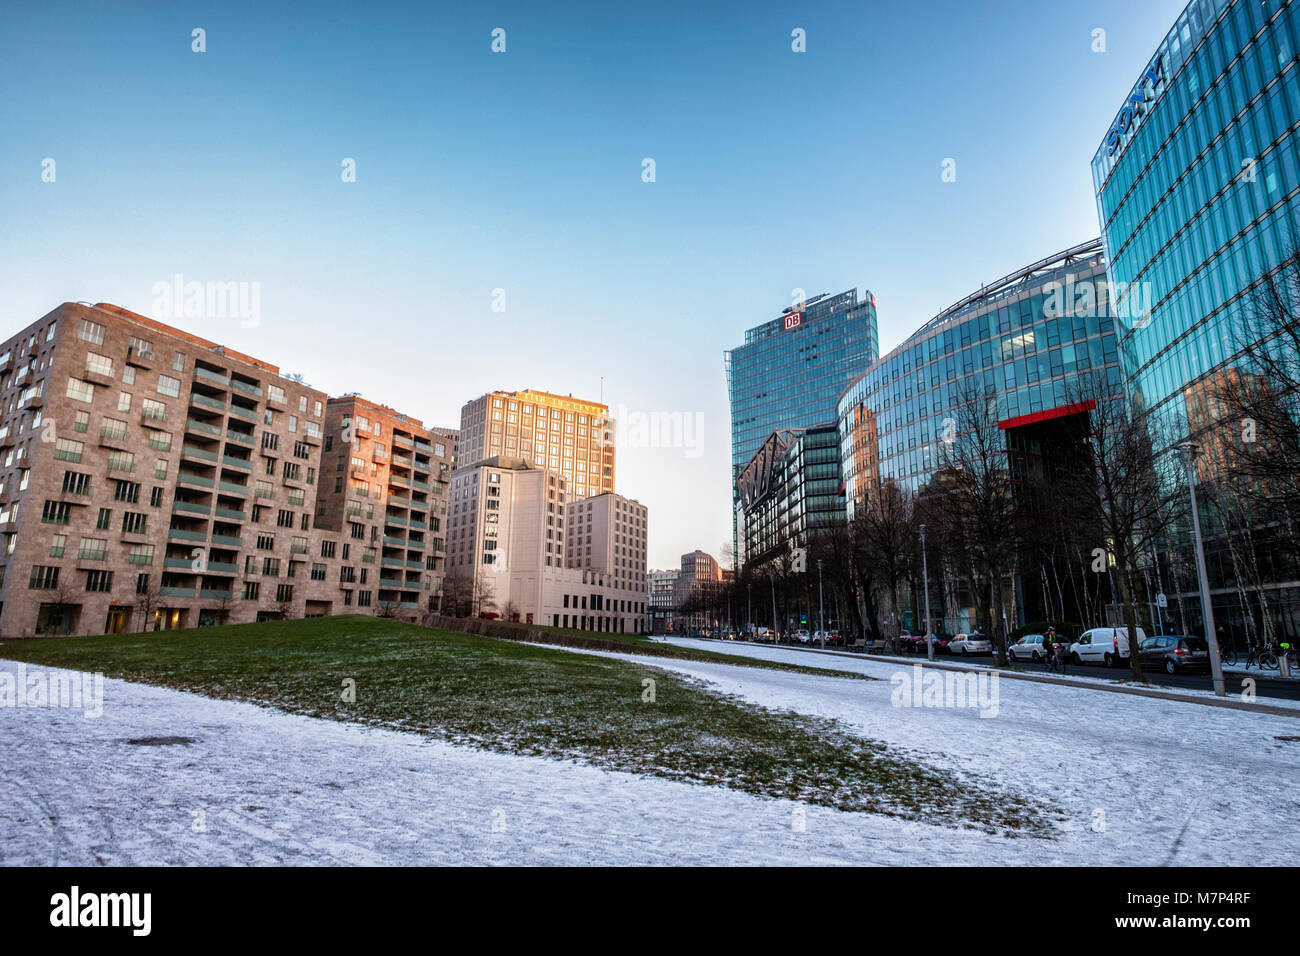 Berlino, Mitte,Potsdamer Platz architettura moderna,Sony & DB edifici in vetro,appartamento edificio e coperta di neve percorso in inverno Foto Stock